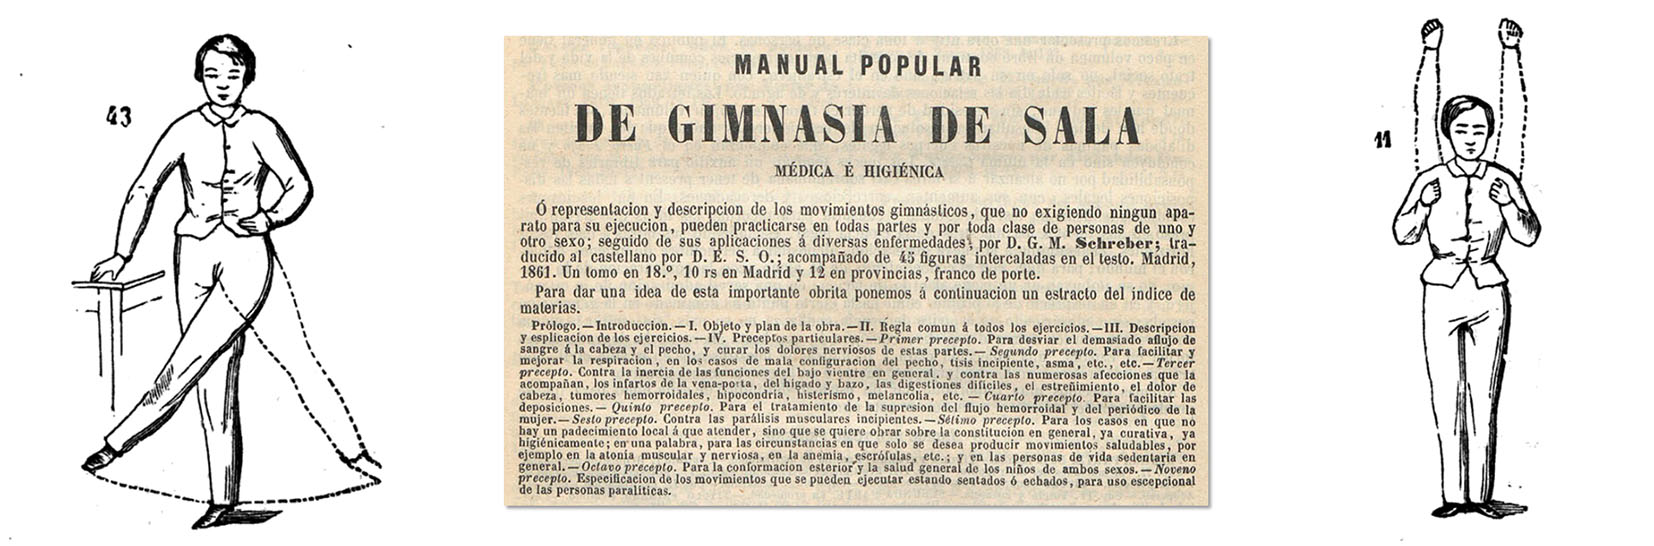 El Monitor de la Salud, Madrid, 15 de agosto de 1861. Ejercicios de gimnasia de sala